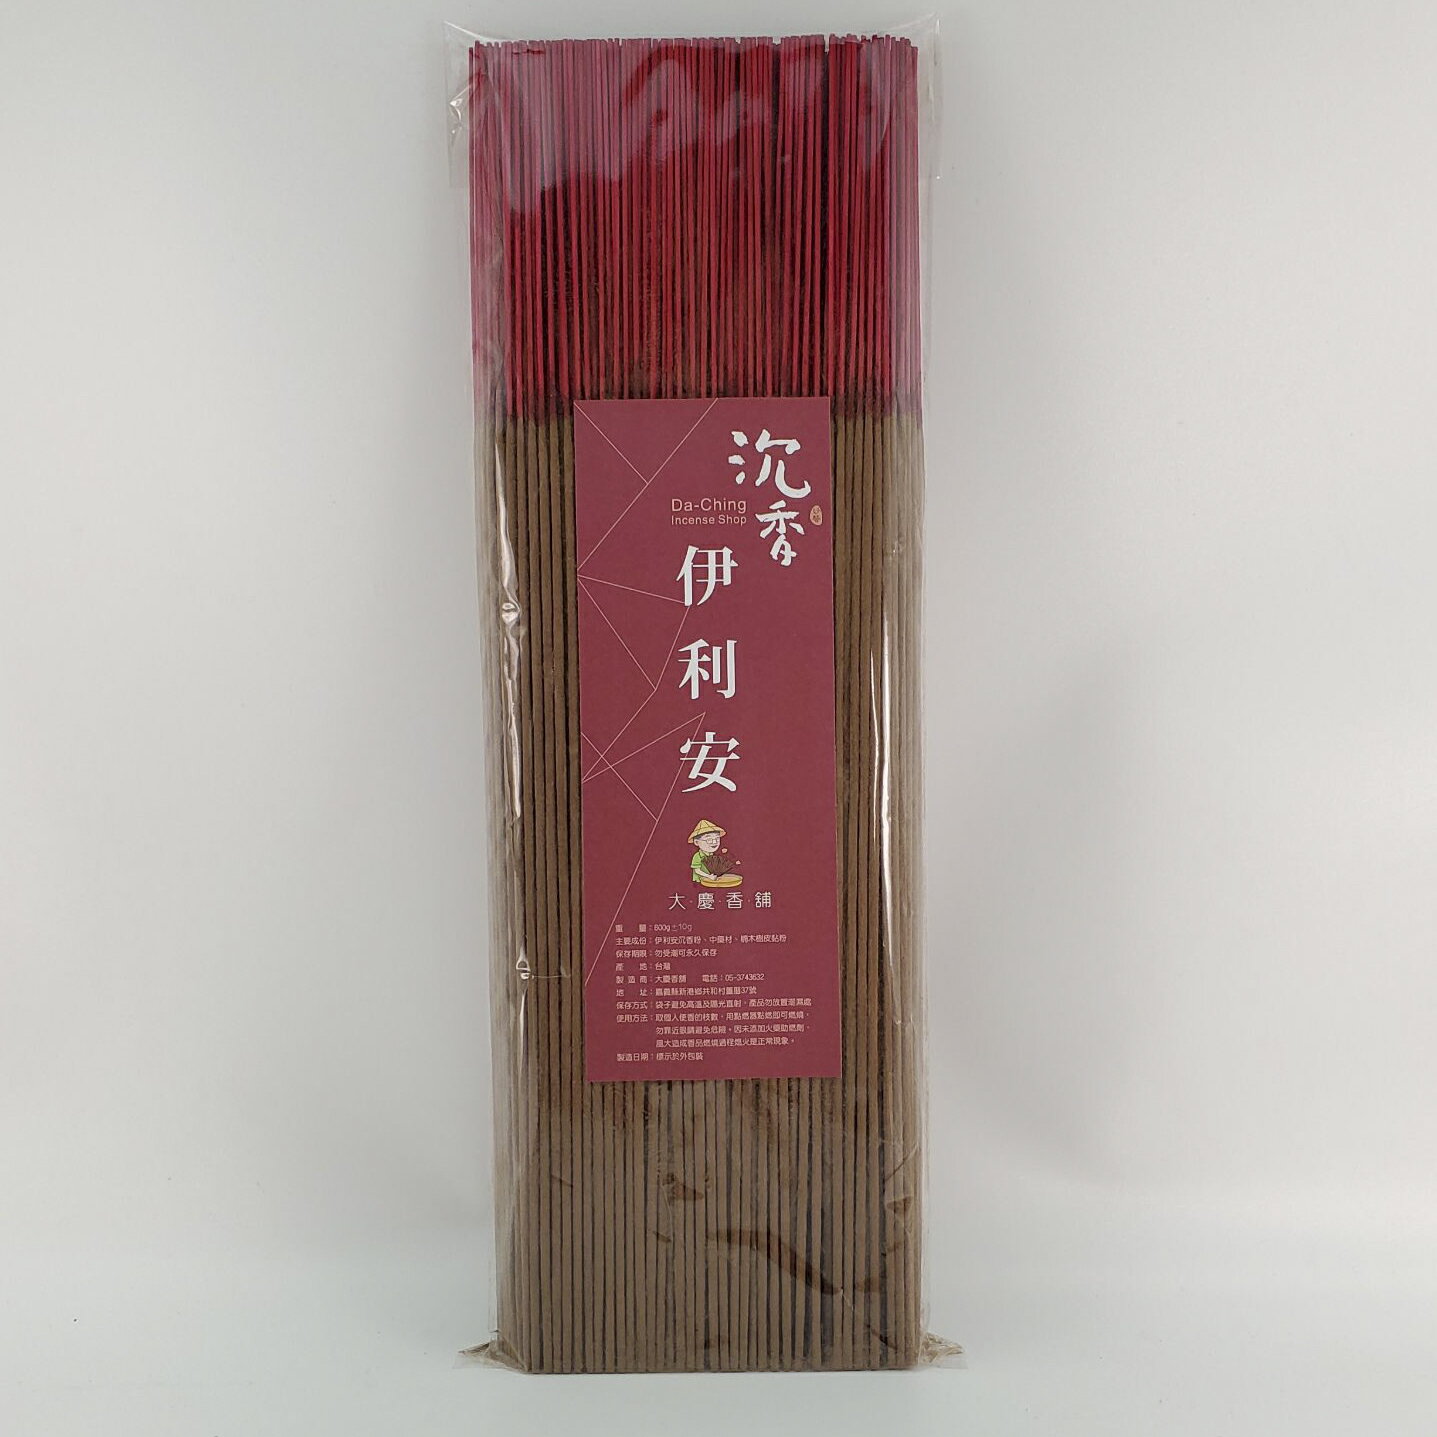 立香 沉香類 伊利安沉香 (一尺六)台灣製造 天然 安全 環保